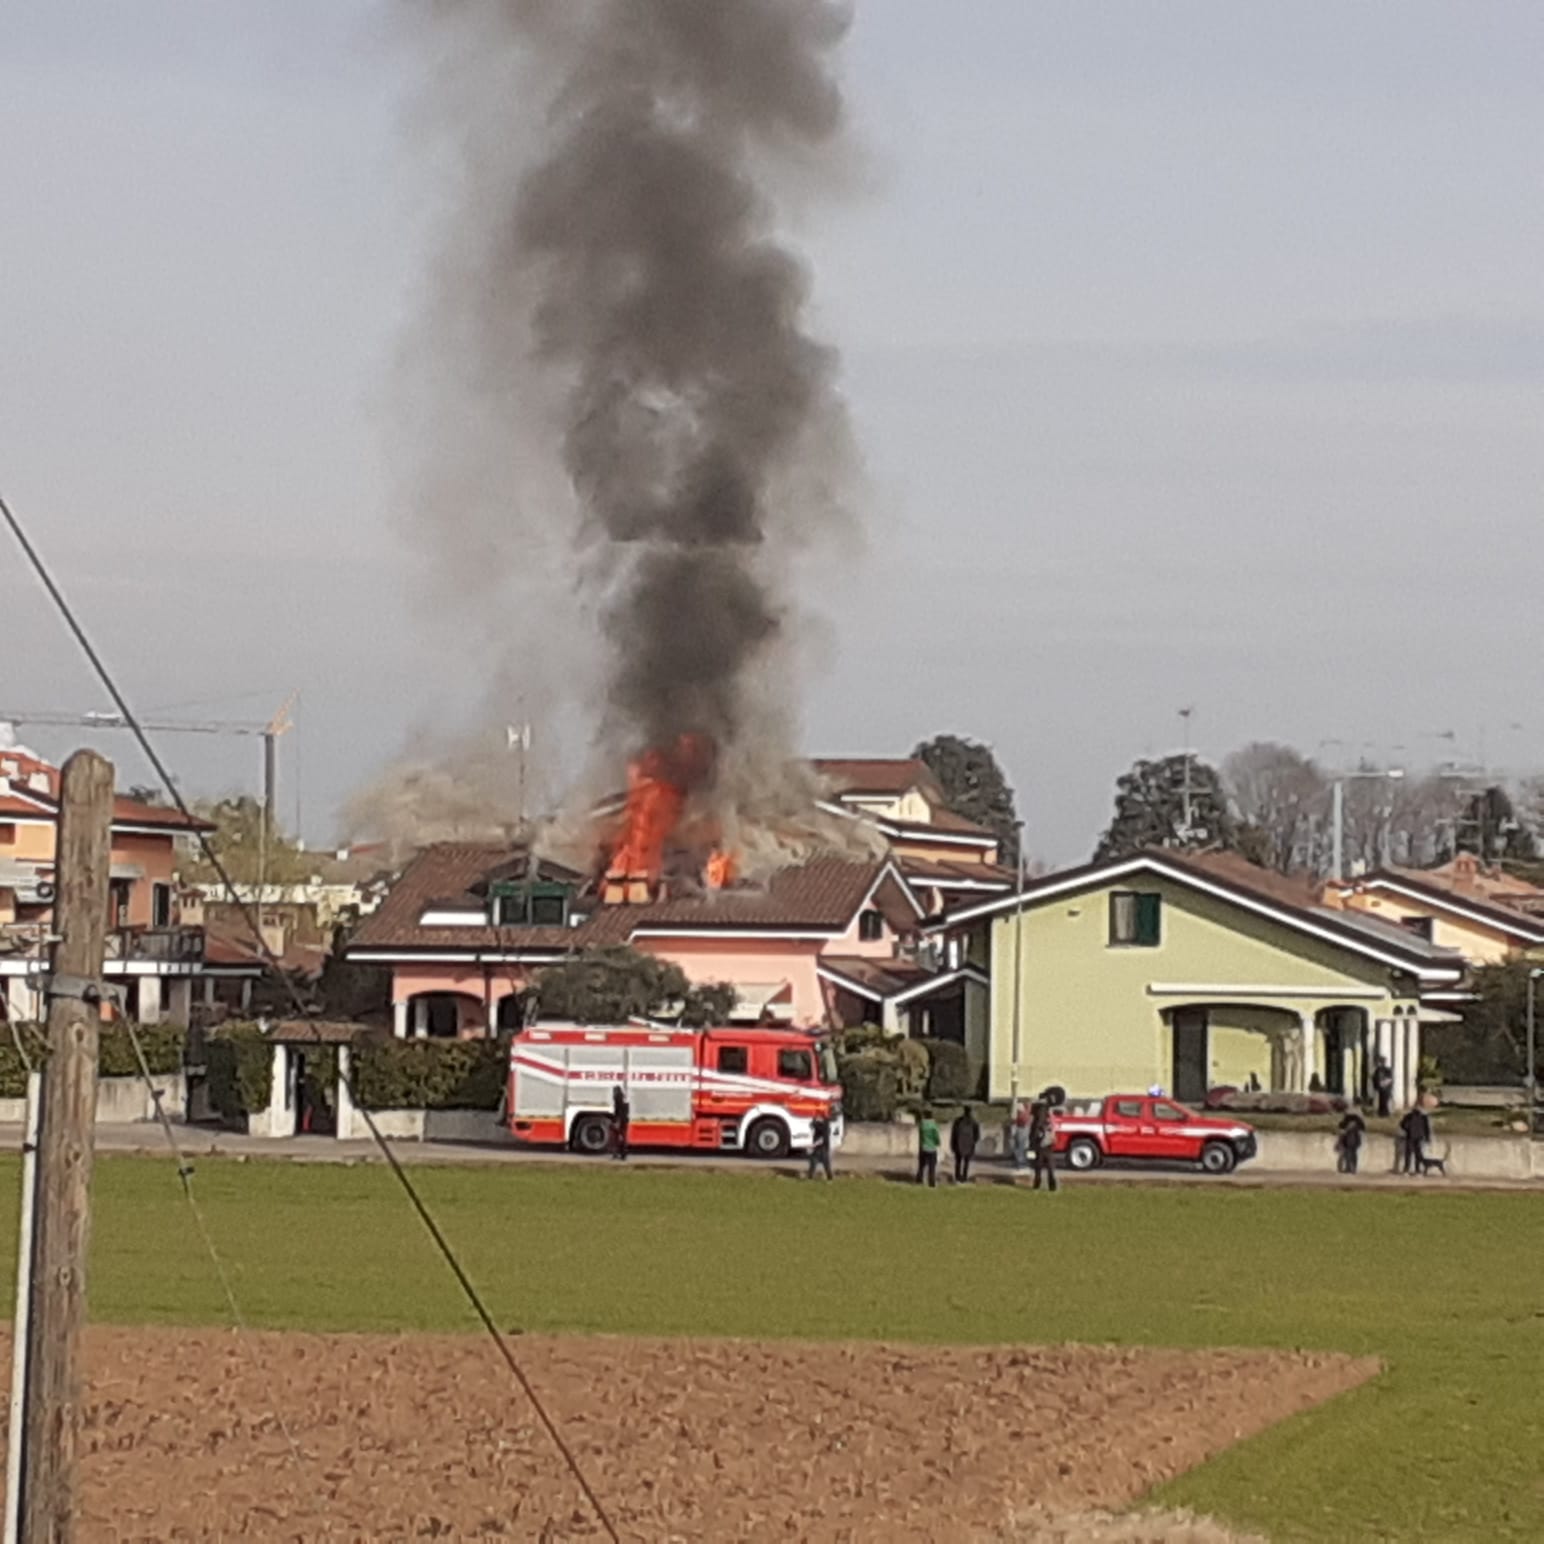 Fiamme in una villetta: incendio in corso al confine fra Saronno e Rovello